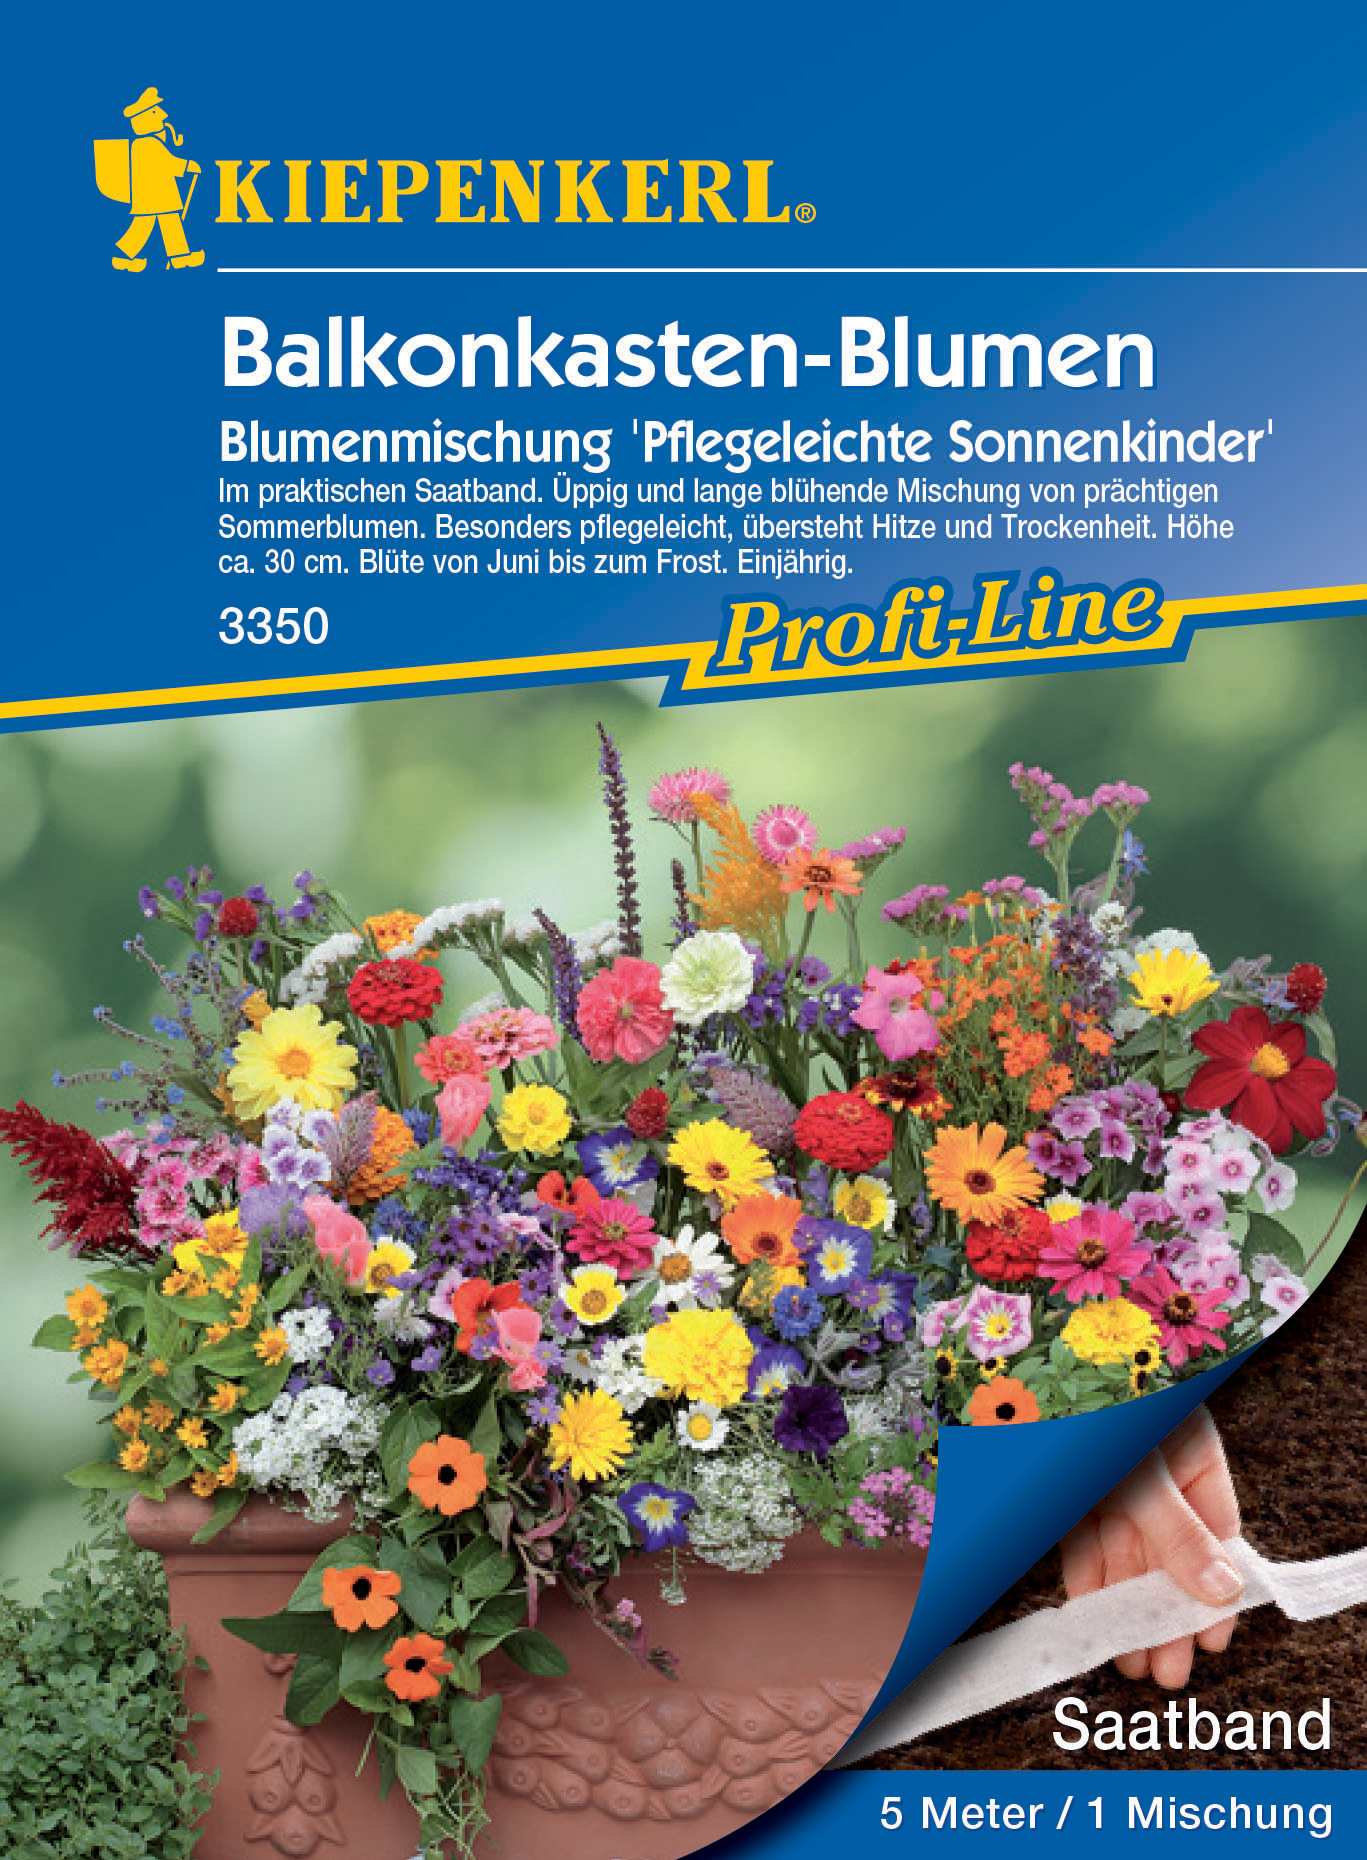 Blumenmischung Balkonkasten-Blumen Pflegeleichte Sonnenkinder, Saatband